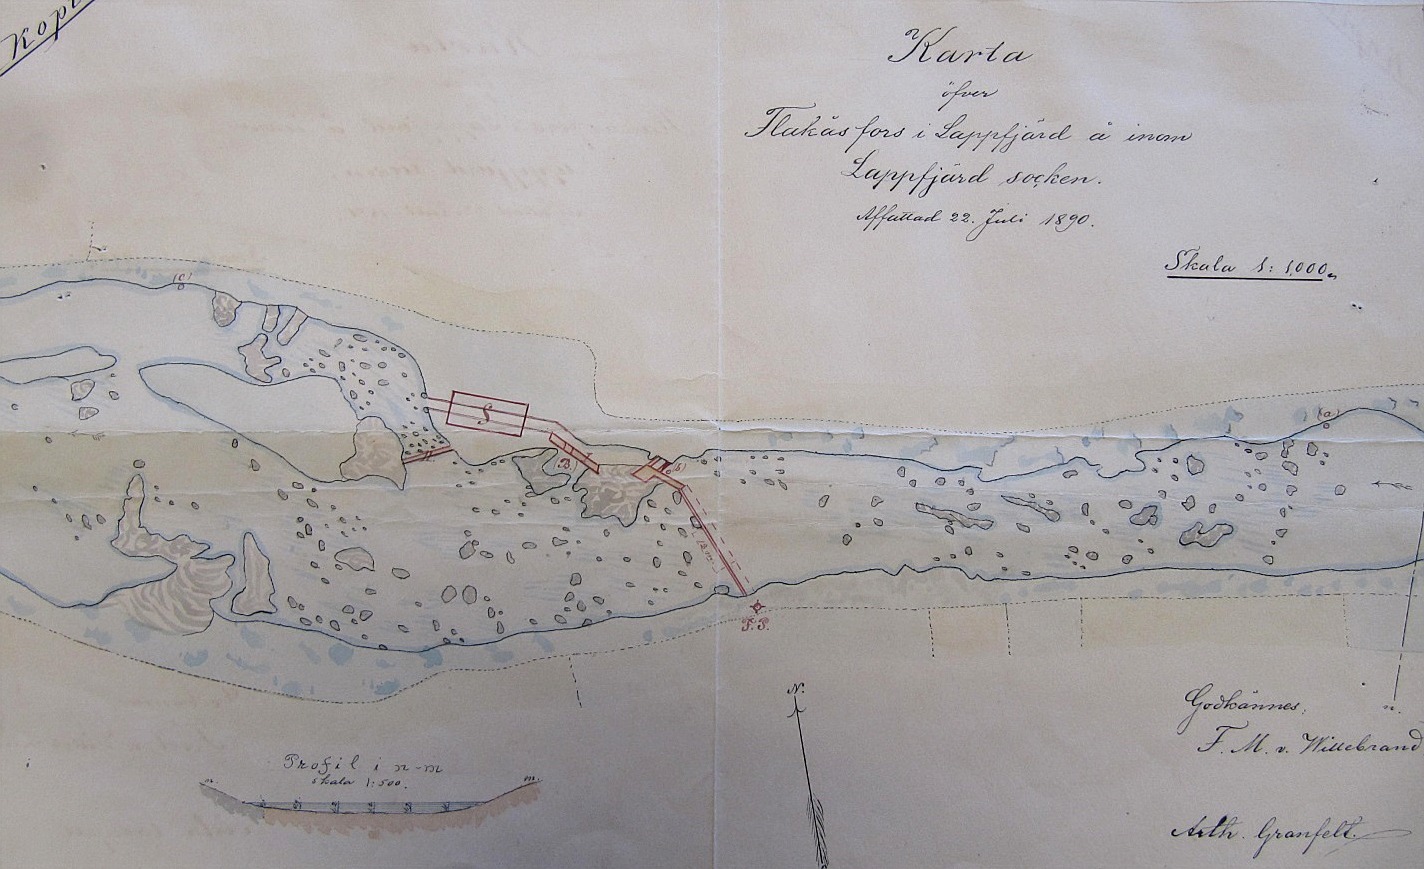 I Storfors finns Flackåsforsen eller Landgärdsforsen och där hade det funnits en kvarn och såg sedan år 1781. Först på åns södra sida men i slutet på 1800-talet byggdes den på den norra sidan. Denna fors har en fallhöjd på 1,2 m. Här en karta från 1890 över Flackåsforsen där sågen finns utritad. 